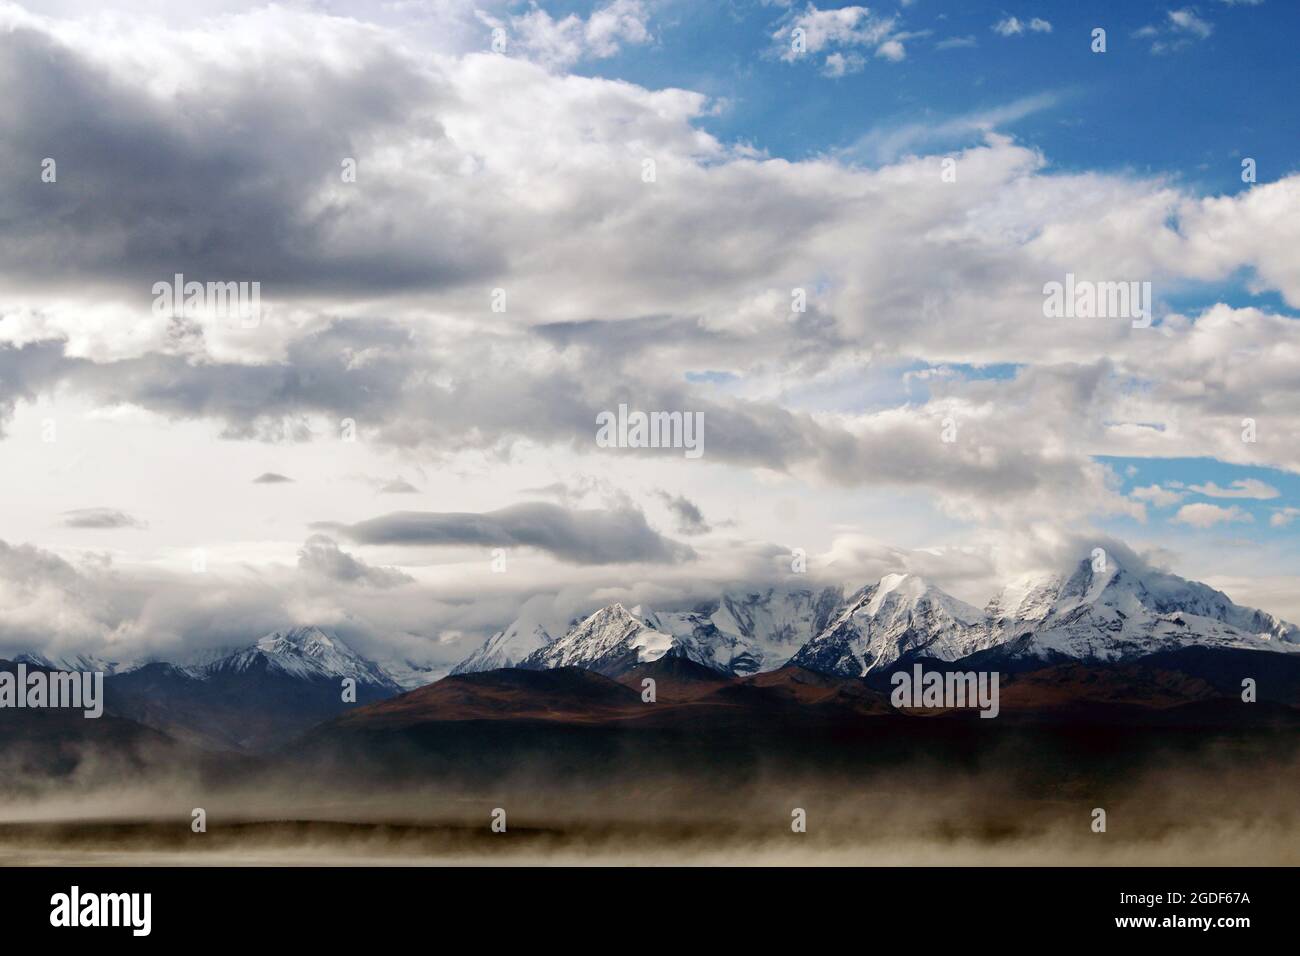 Bergkette des Denali, ehemals Mount McKinley genannt, im Denali Nationalpark in Alaska, USA. Stock Photo